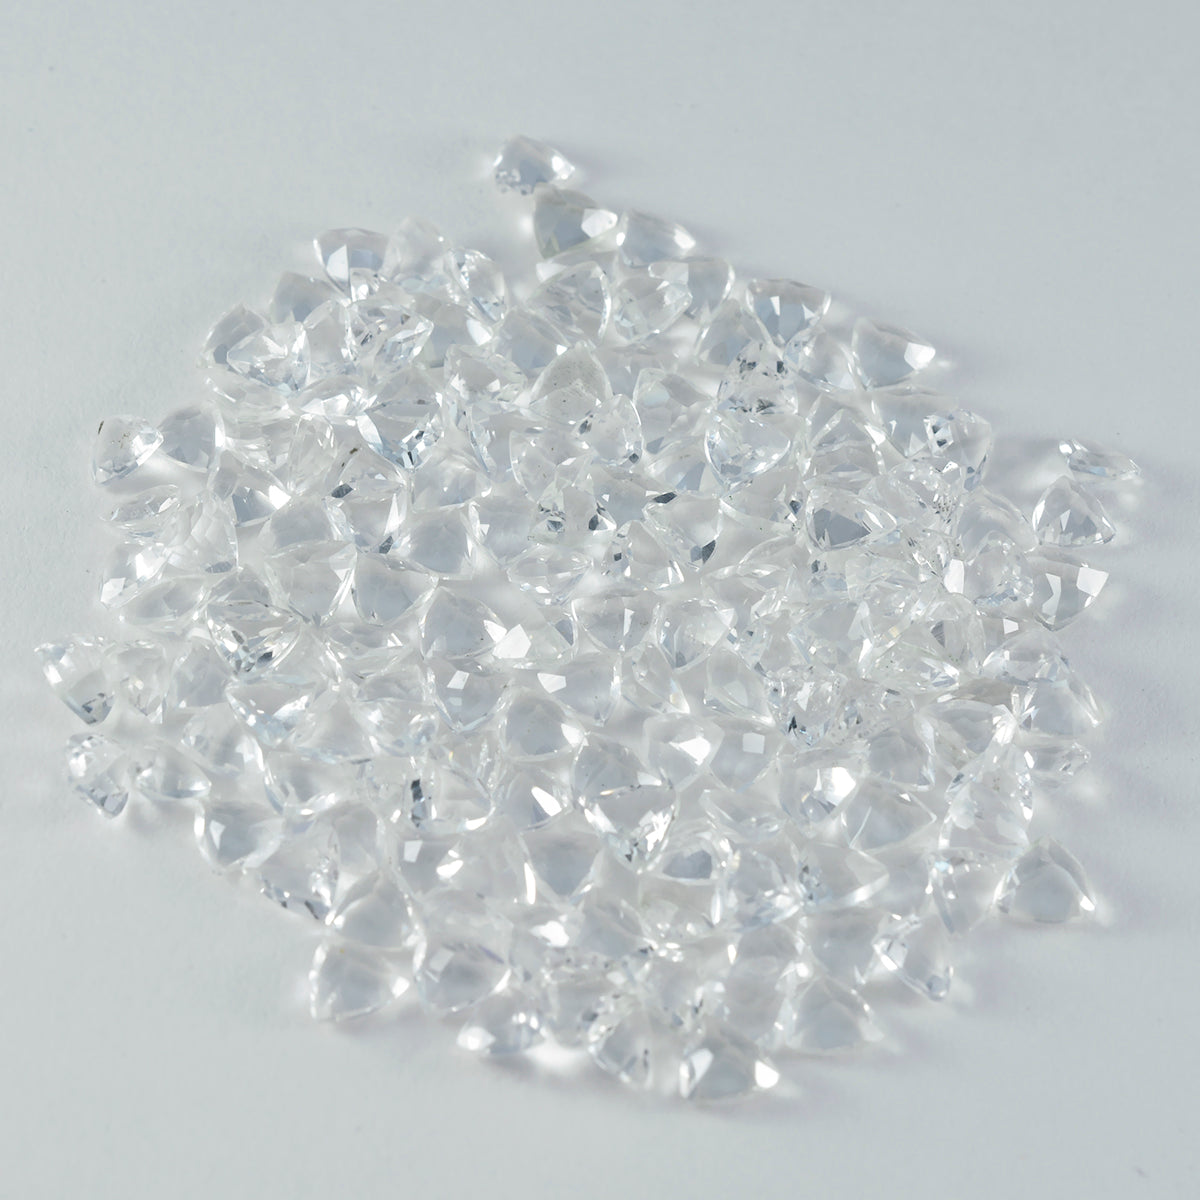 Riyogems 1 Stück weißer Kristallquarz, facettiert, 5 x 5 mm, Trillionenform, wunderbare Qualitätsedelsteine